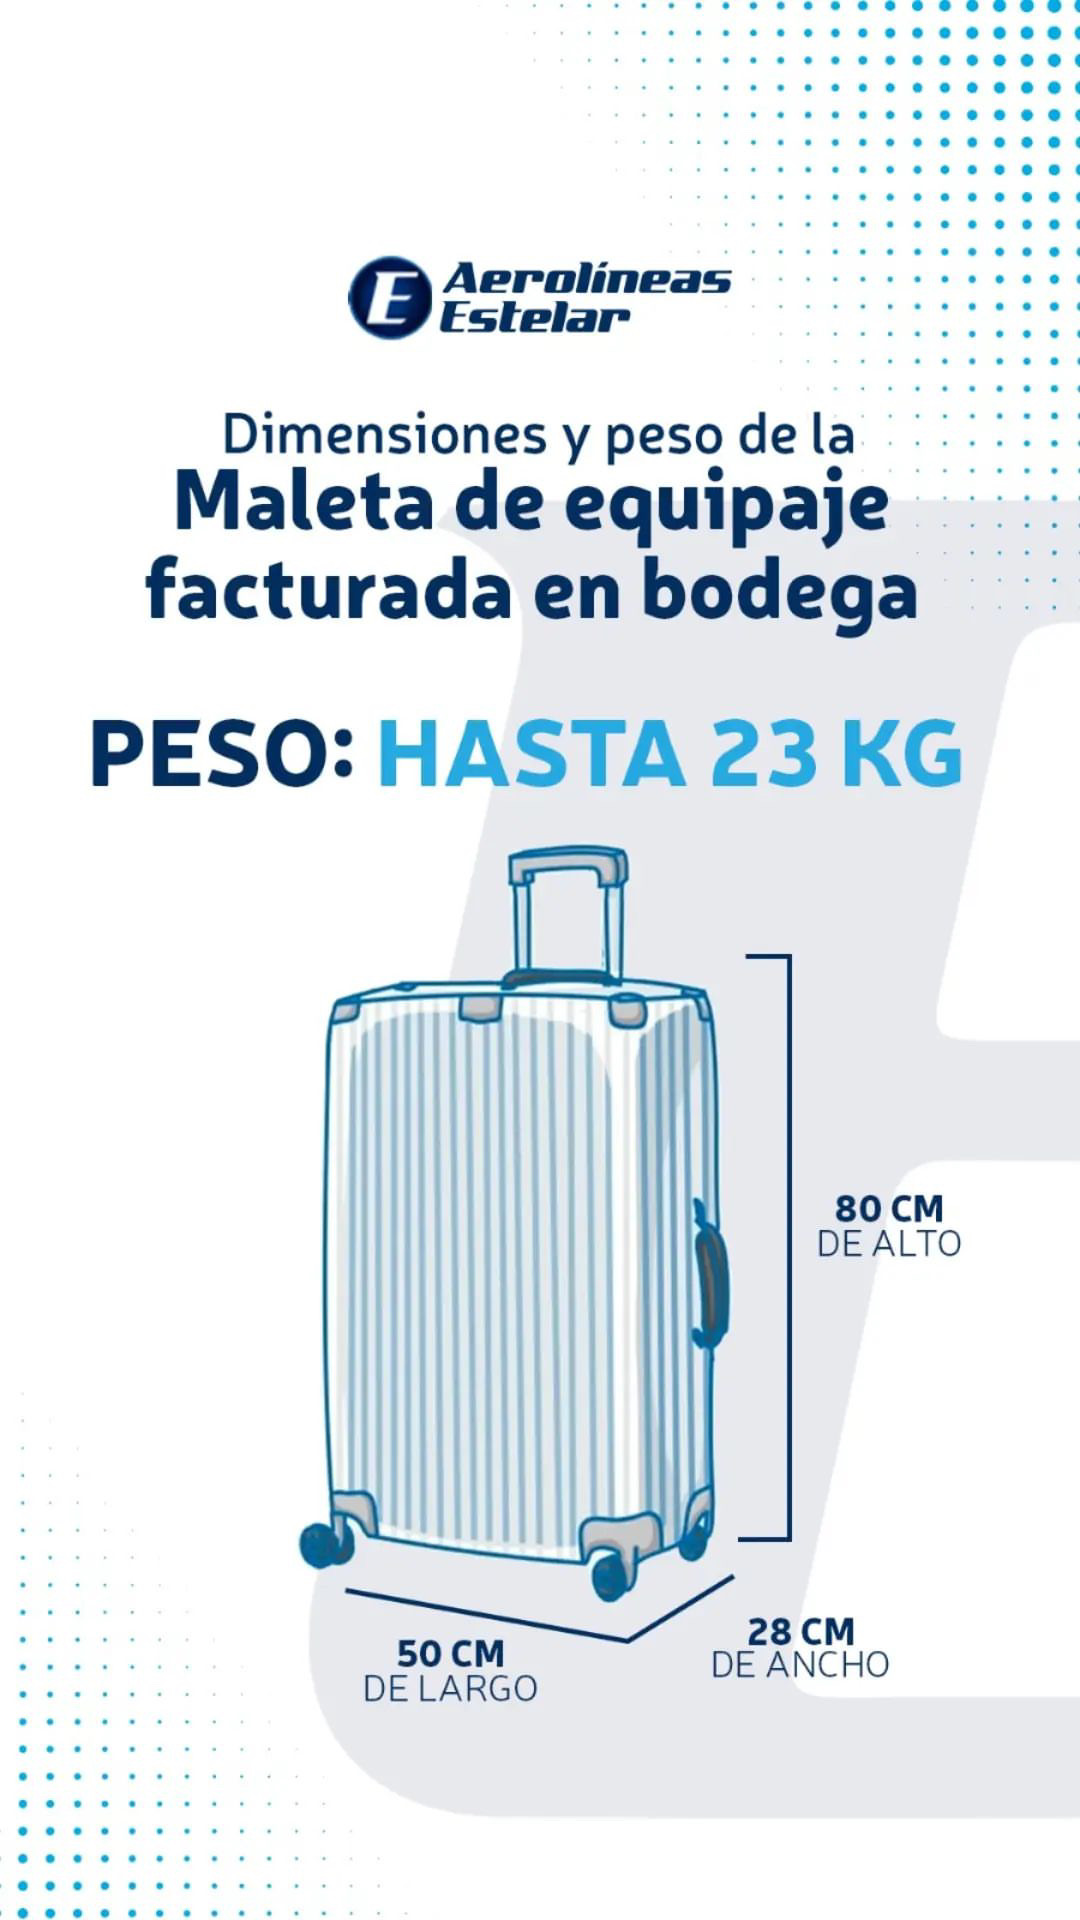 Equipaje permitido según la compañía aérea - Maleta y Viaje